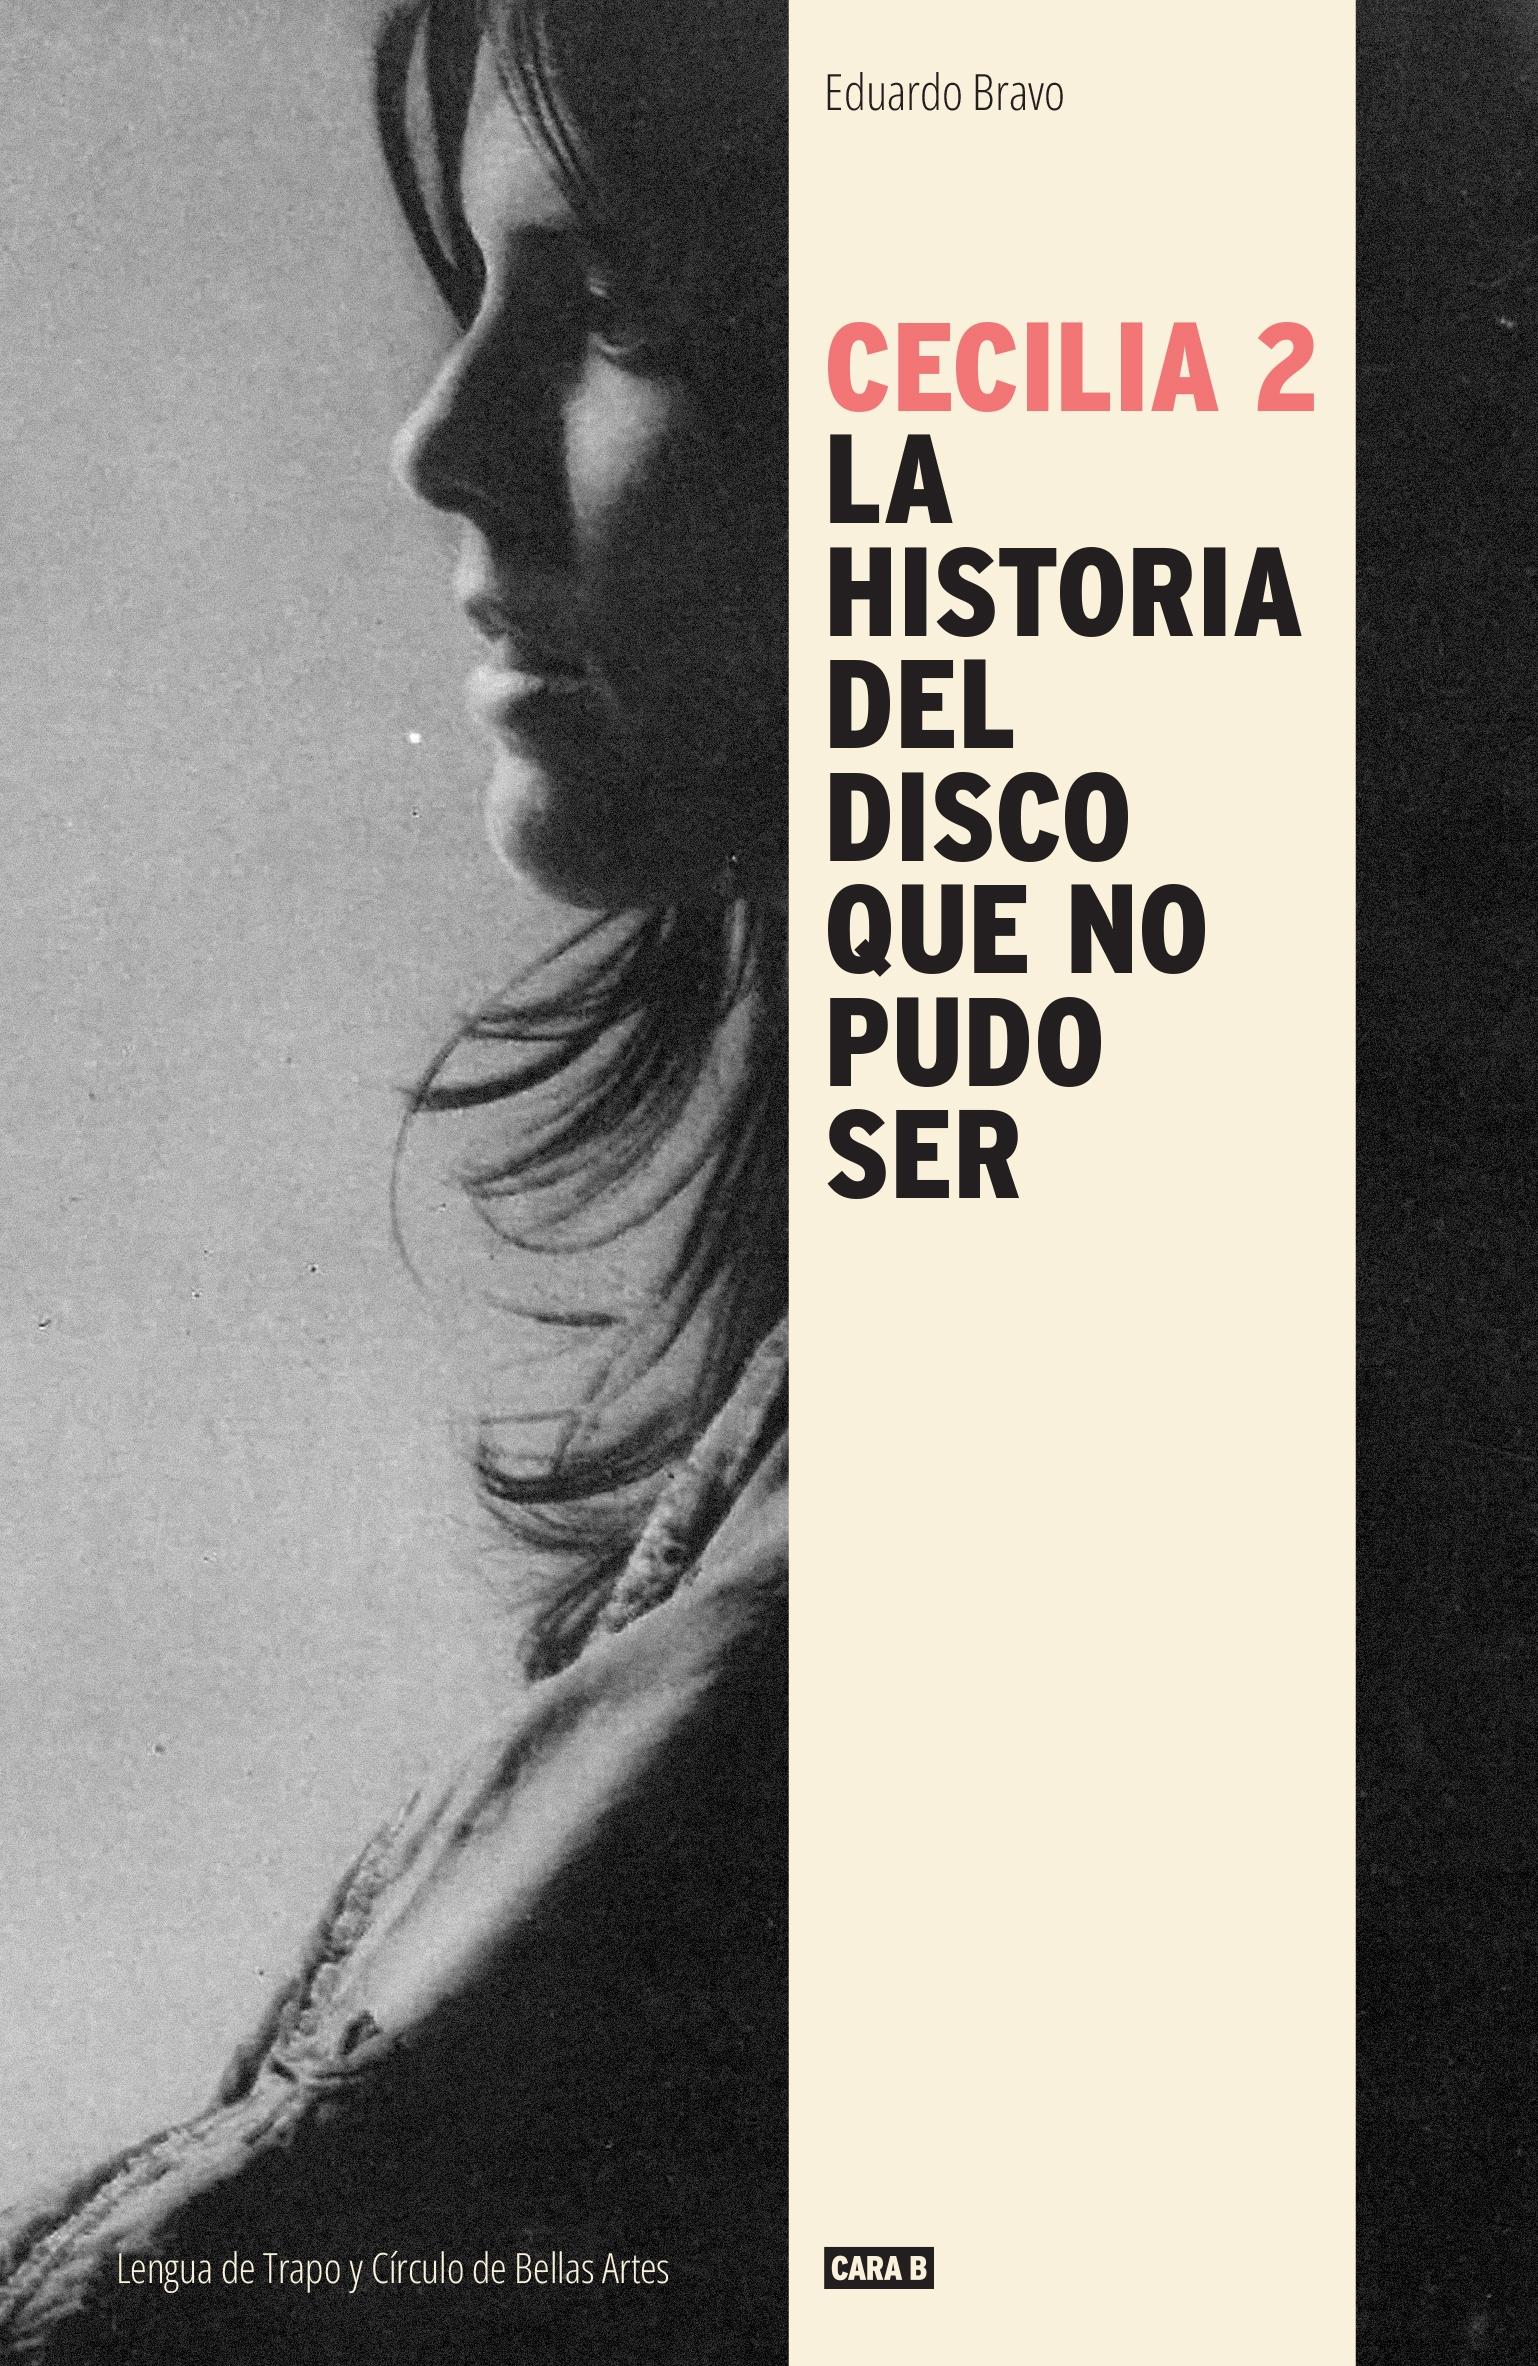 Cecilia 2 "La Historia del Disco que no Pudo Ser"